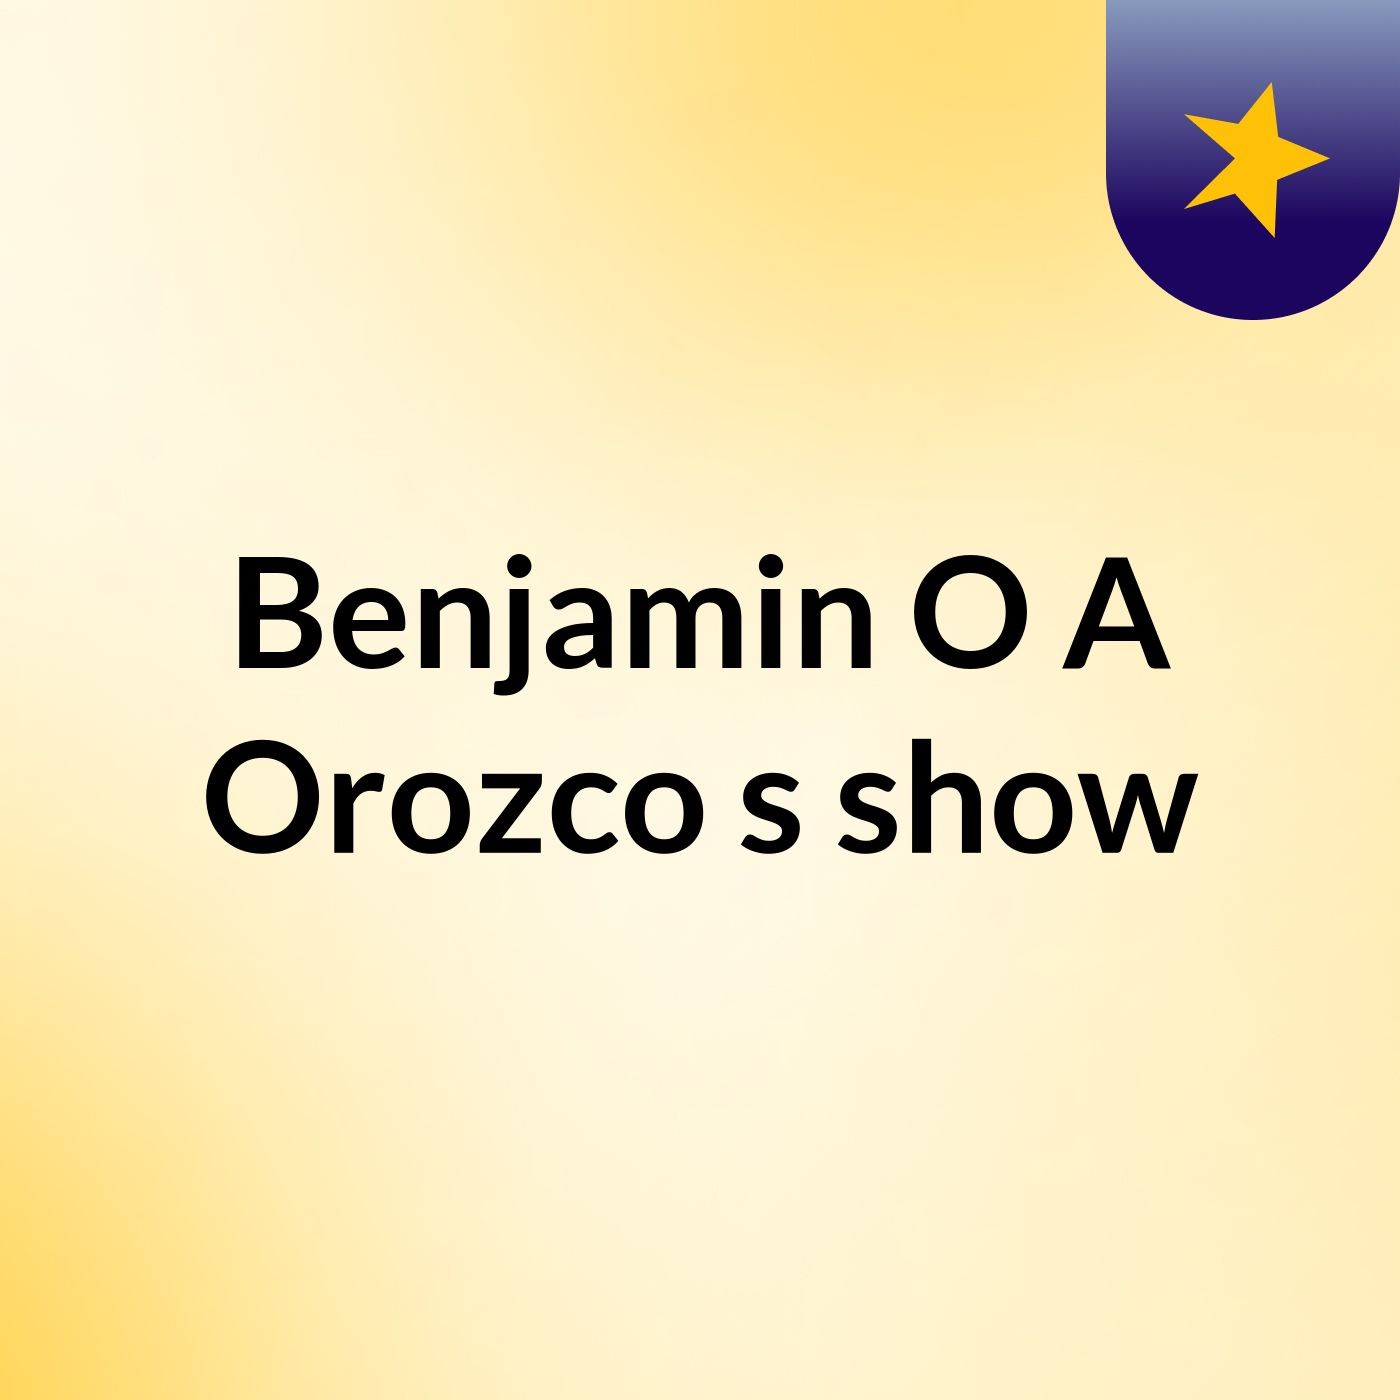 Benjamin O A Orozco's show